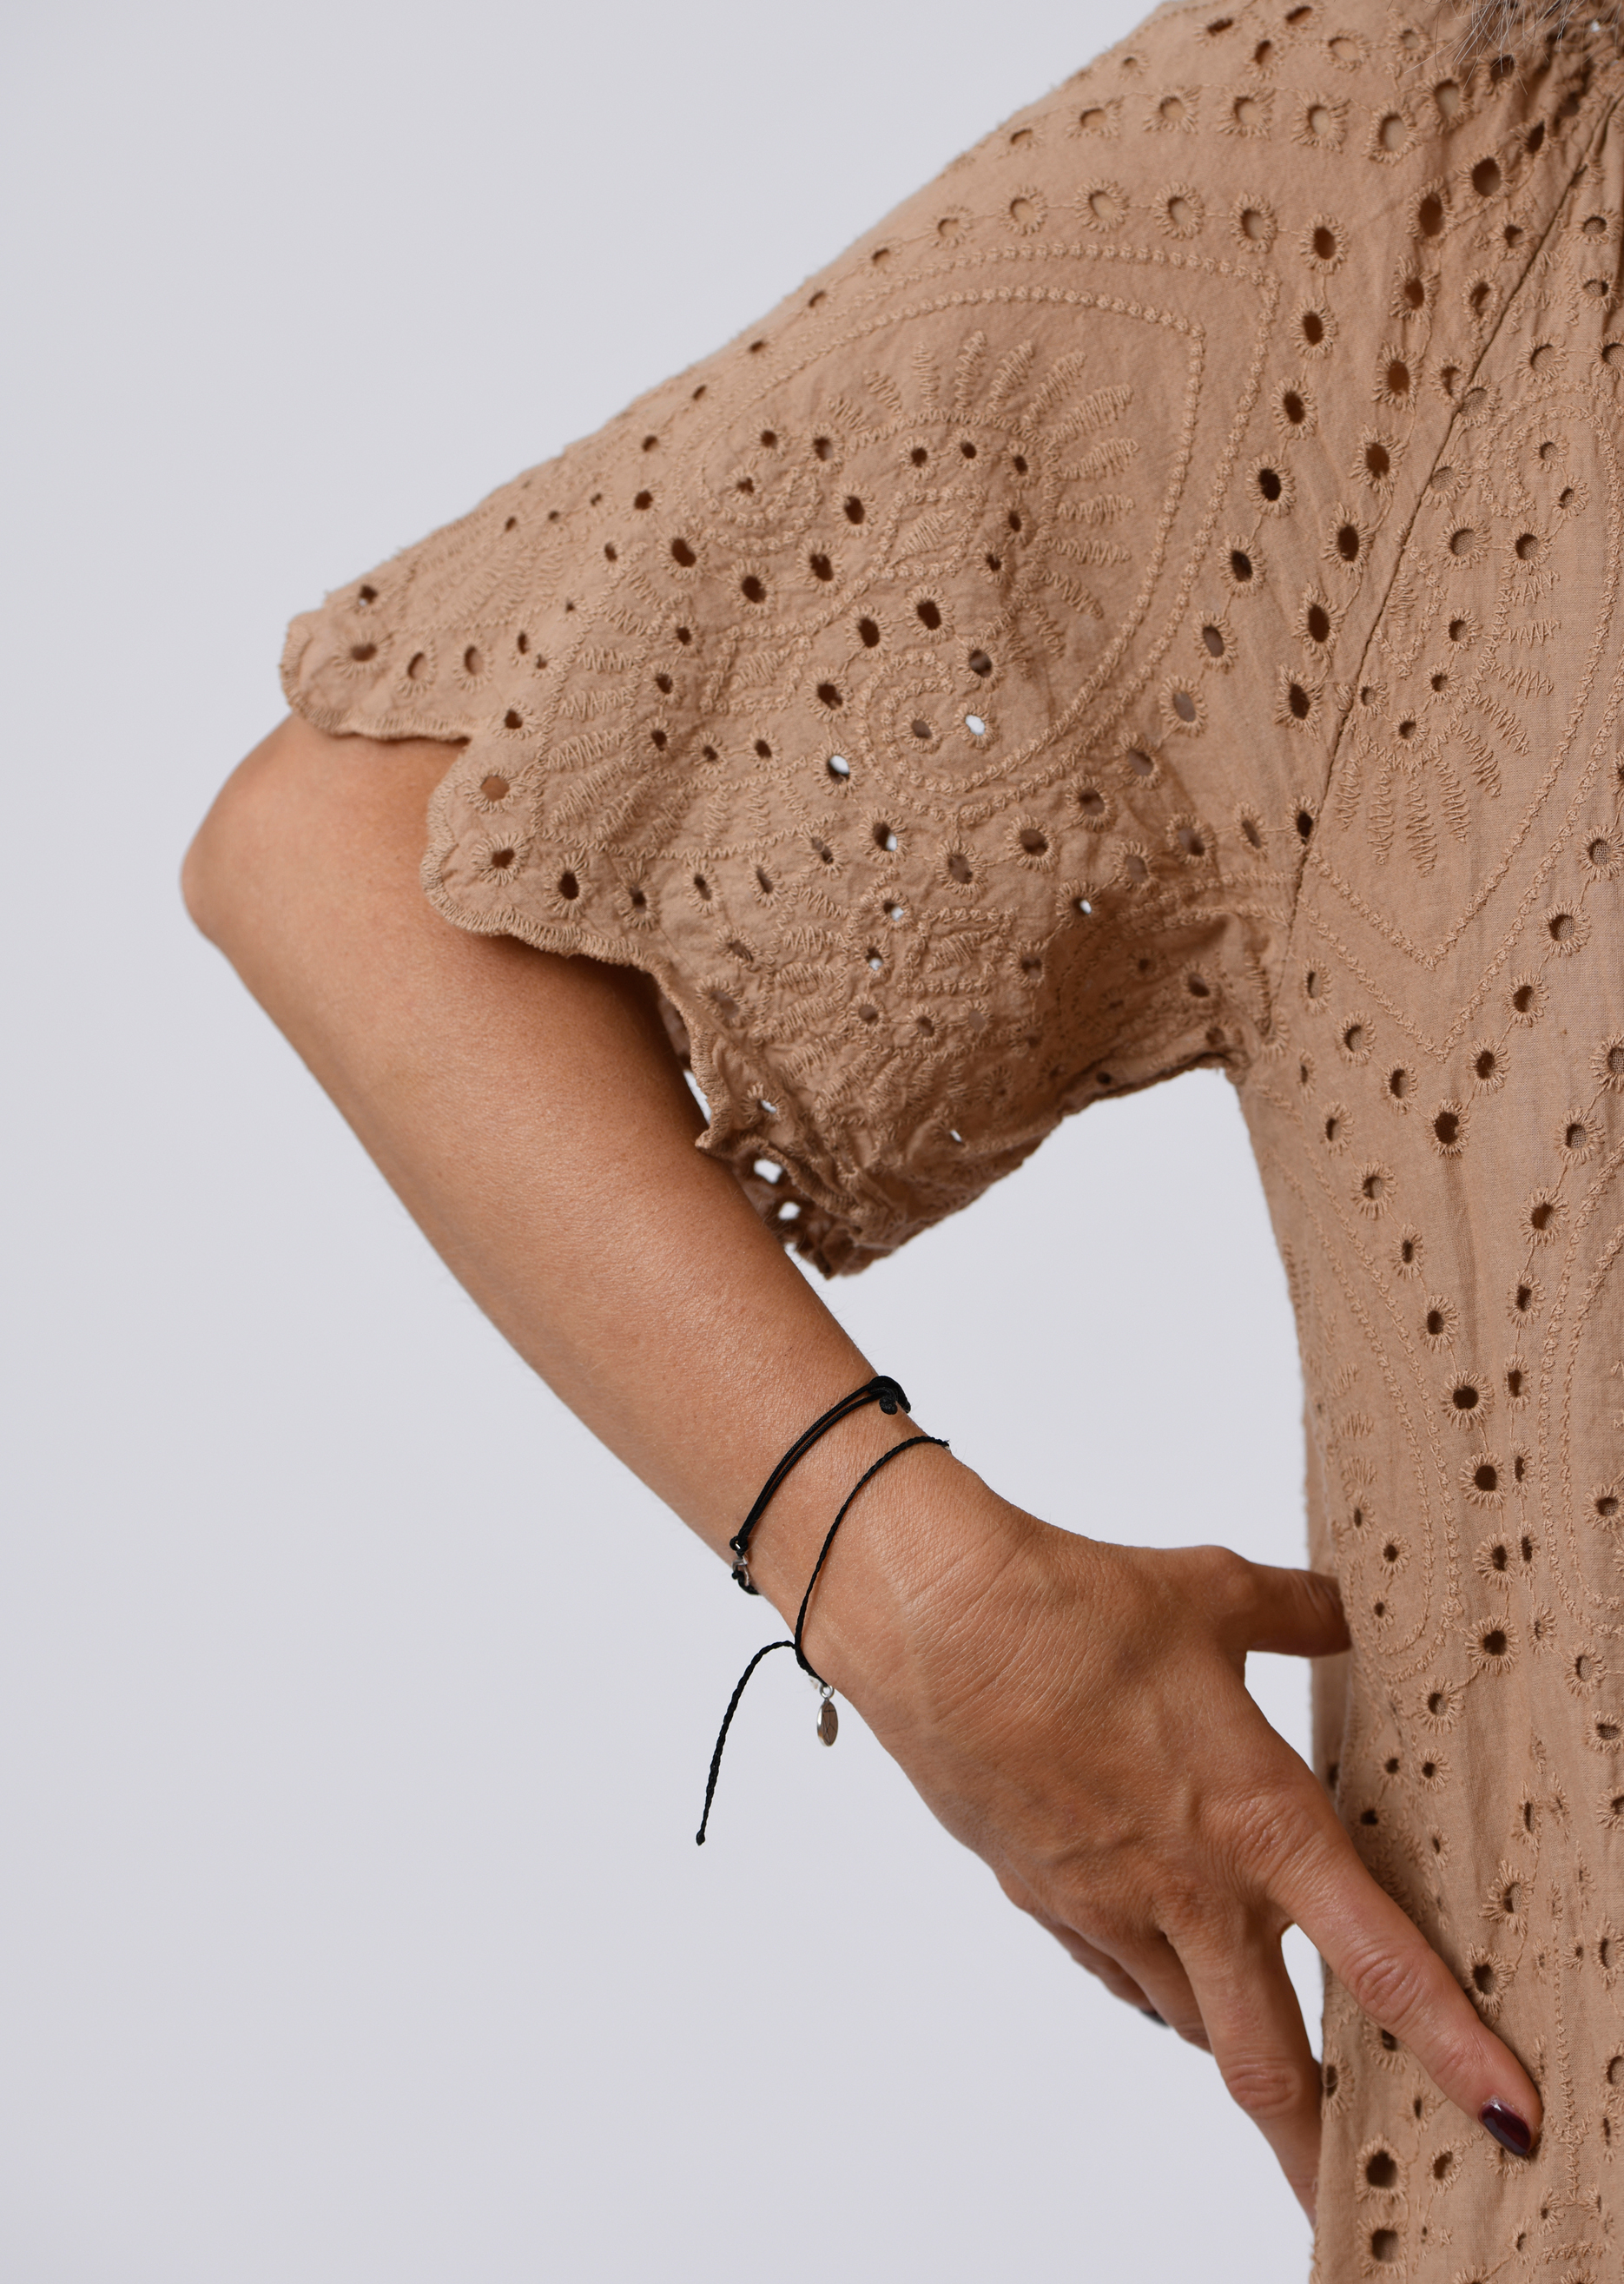 langes Kleid | Lochspitze Farbe nougat SALE in Salzkorn-Fashion Carmenausschnitt | | aus mit Kleider